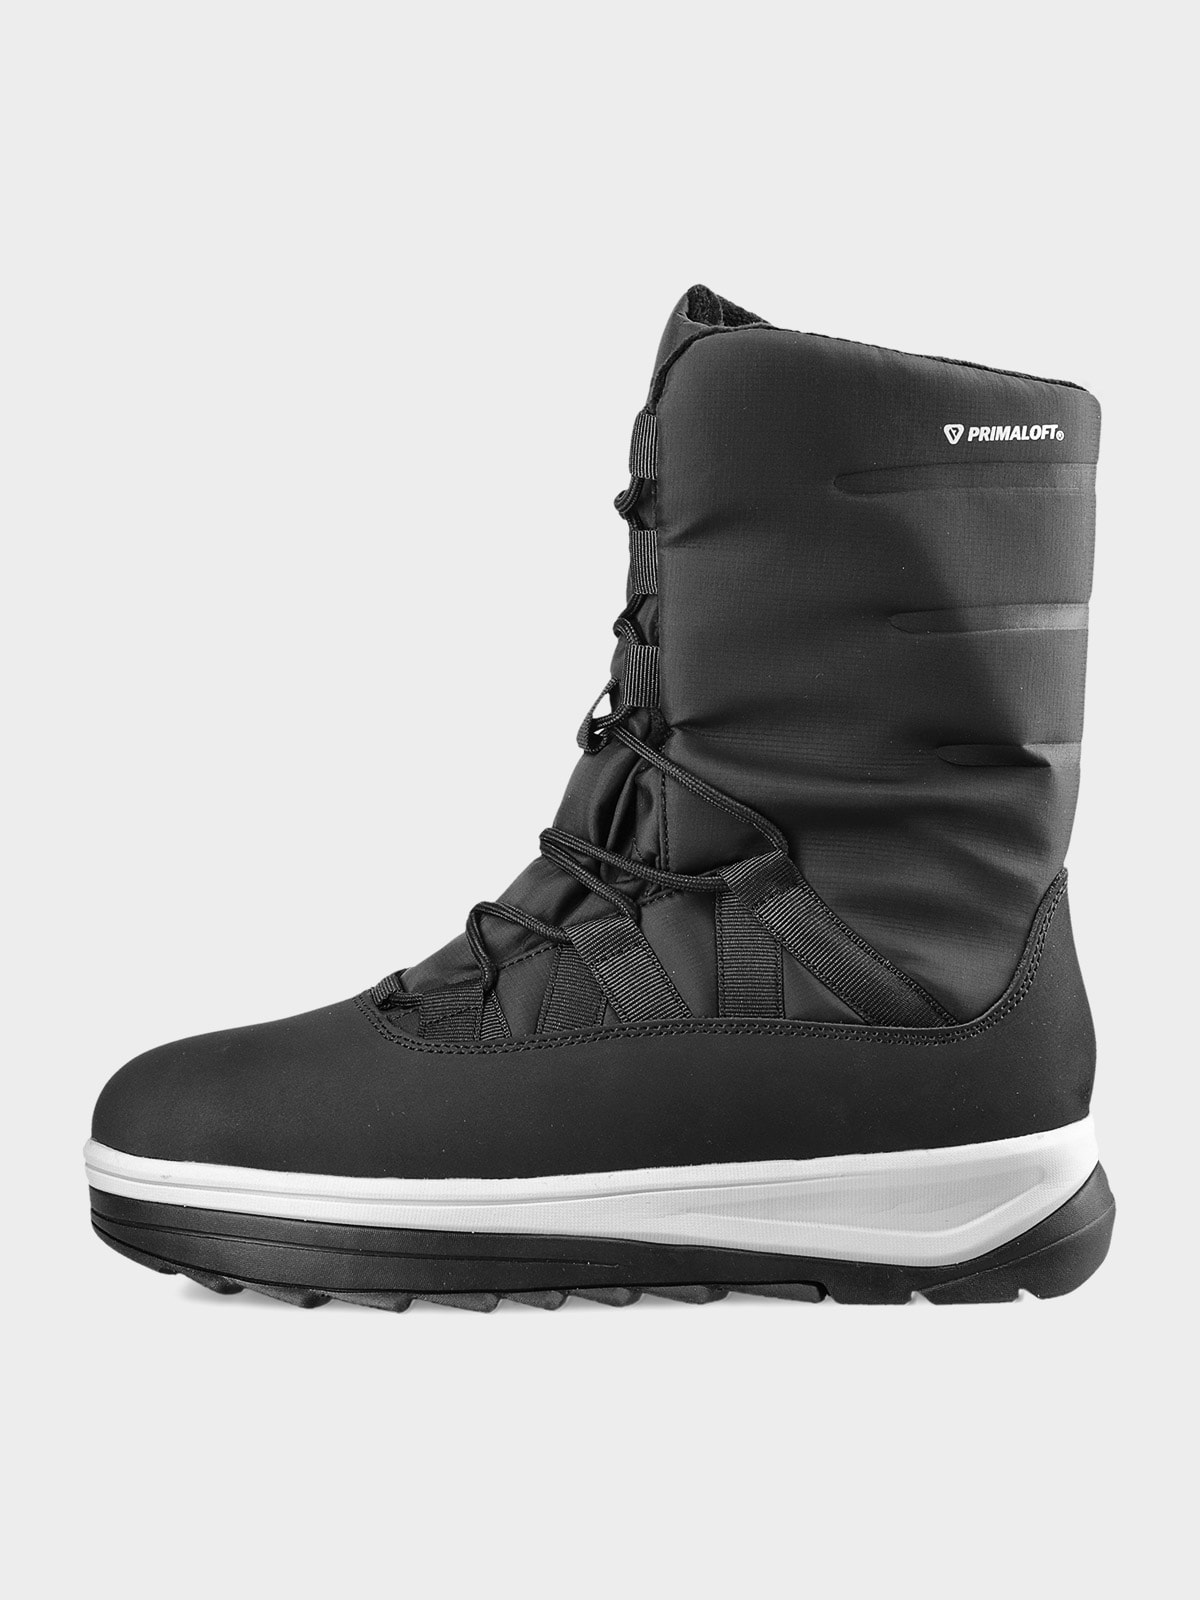 Dámske topánky do snehu INUA s Primaloft výplňou - čierne